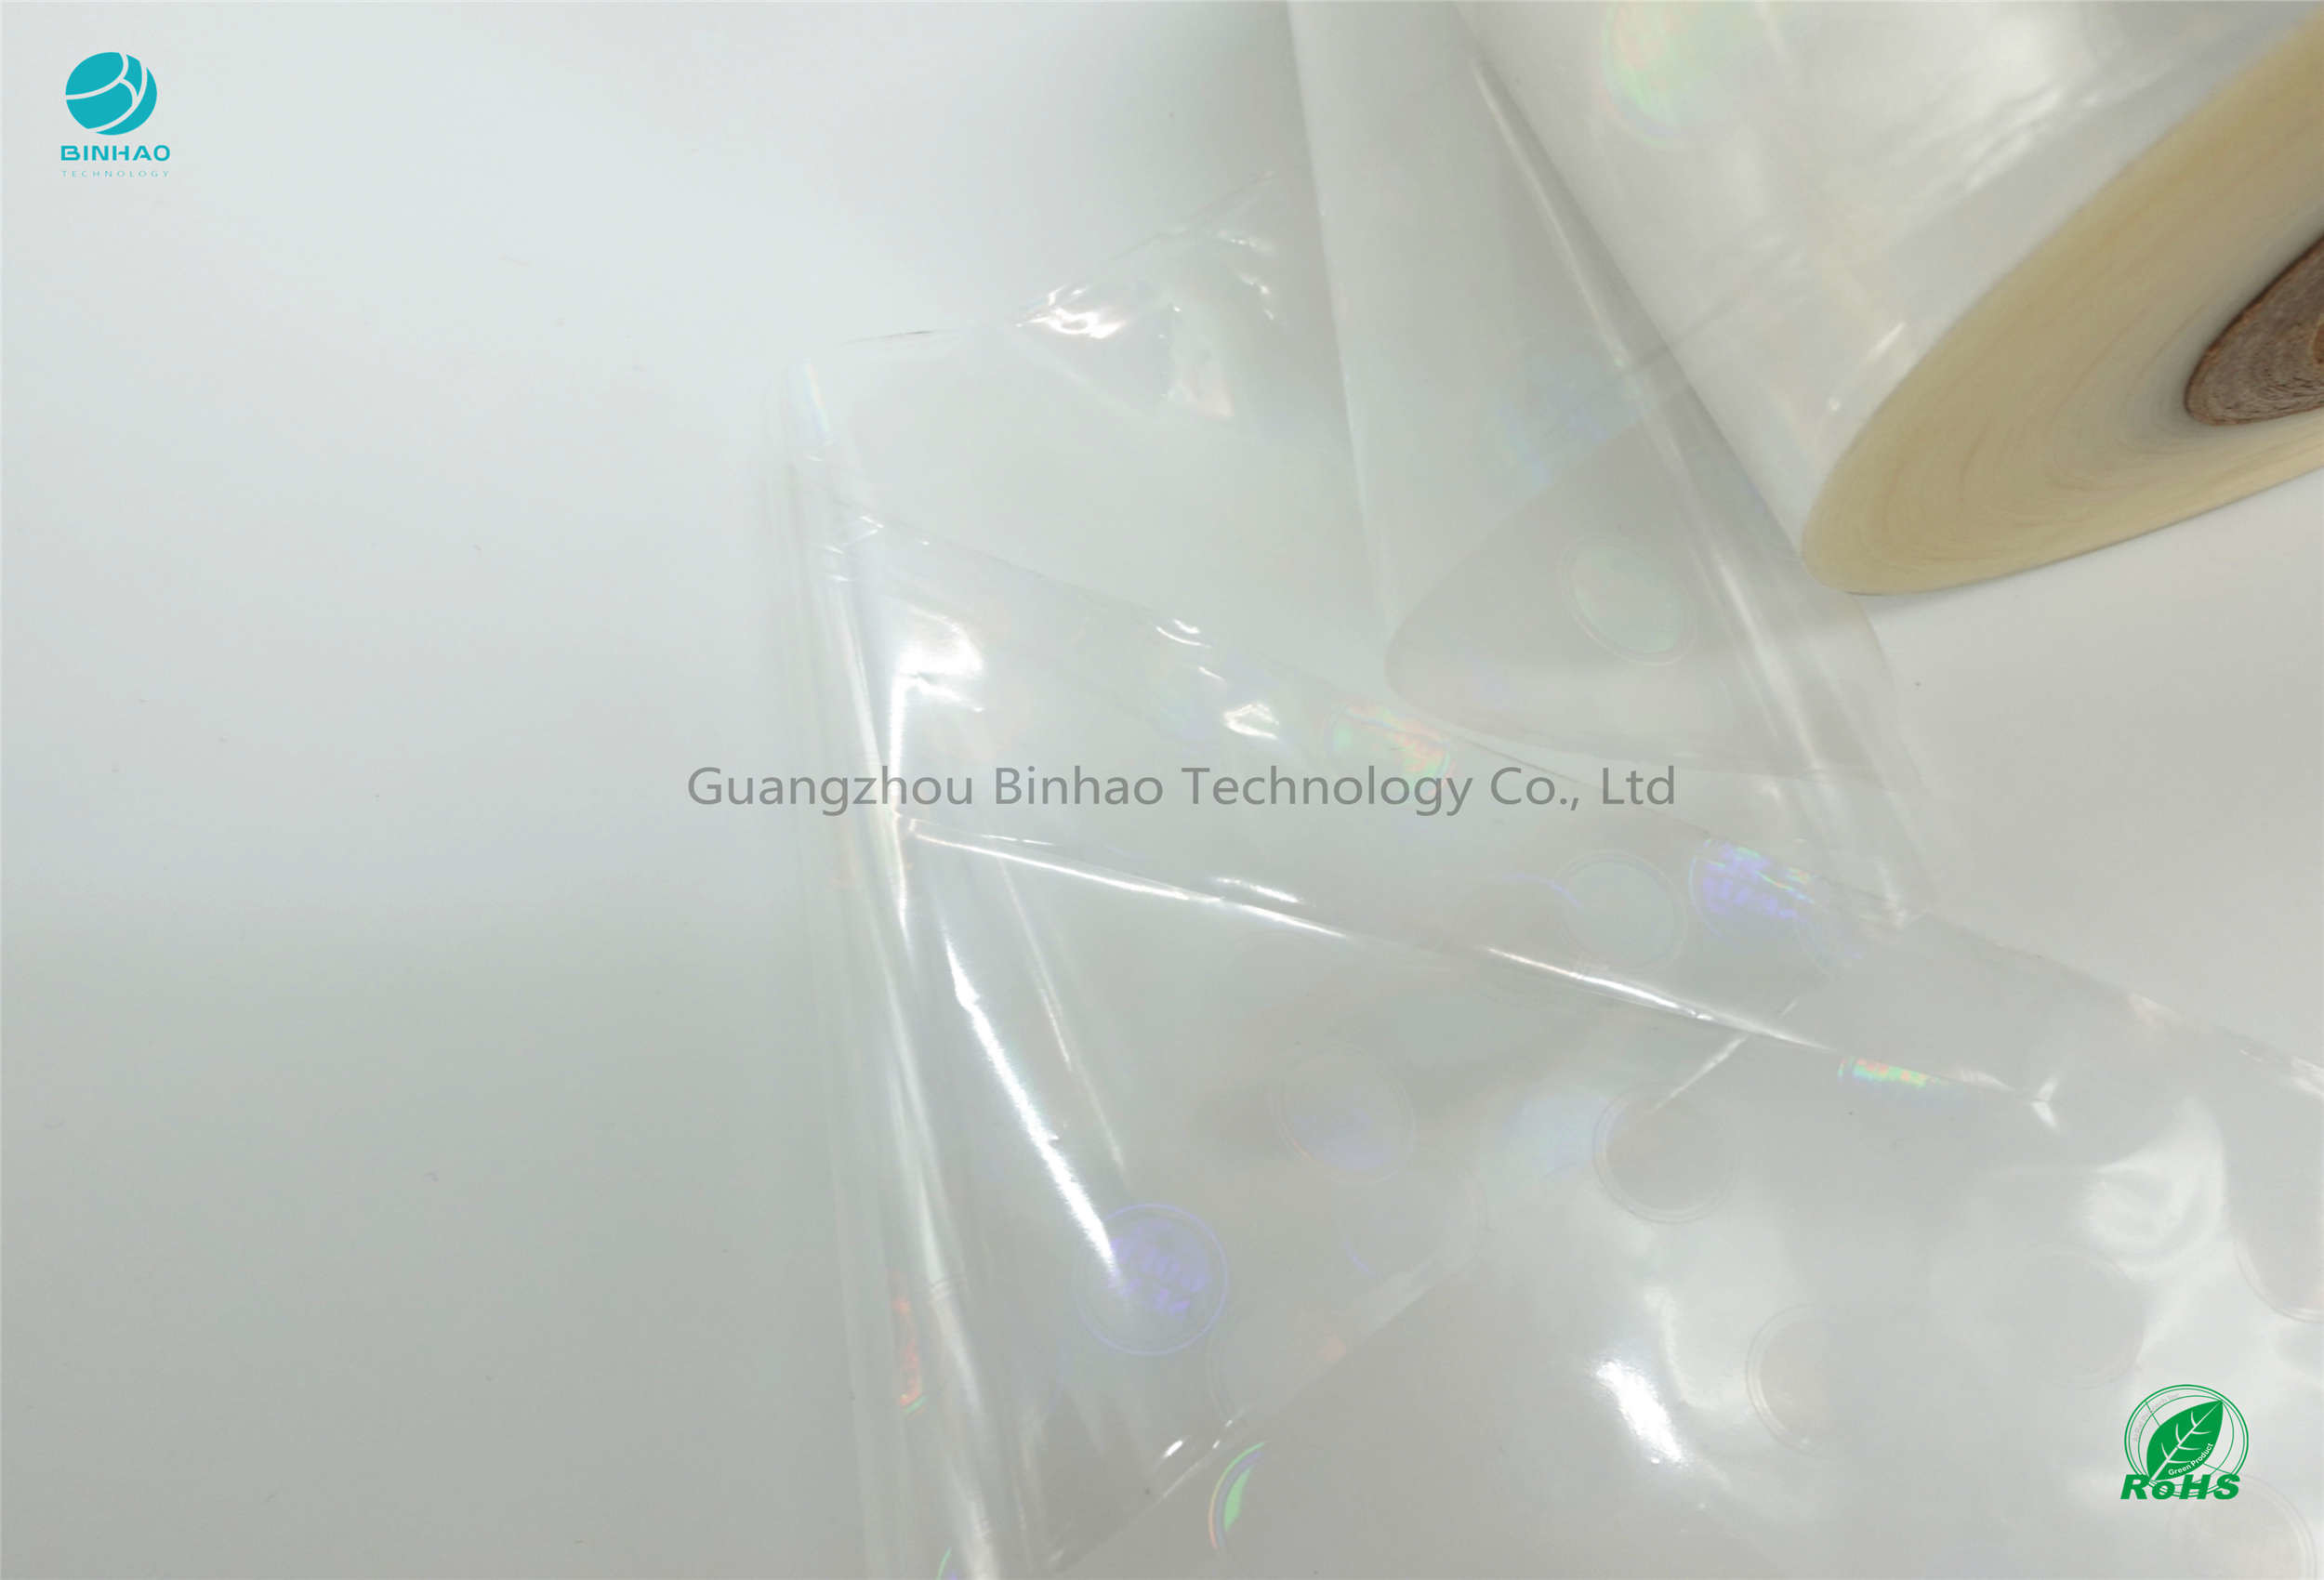 Film d'imballaggio olografici termosaldati su due lati della sigaretta/pellicola di polietilene orientata biassalmente